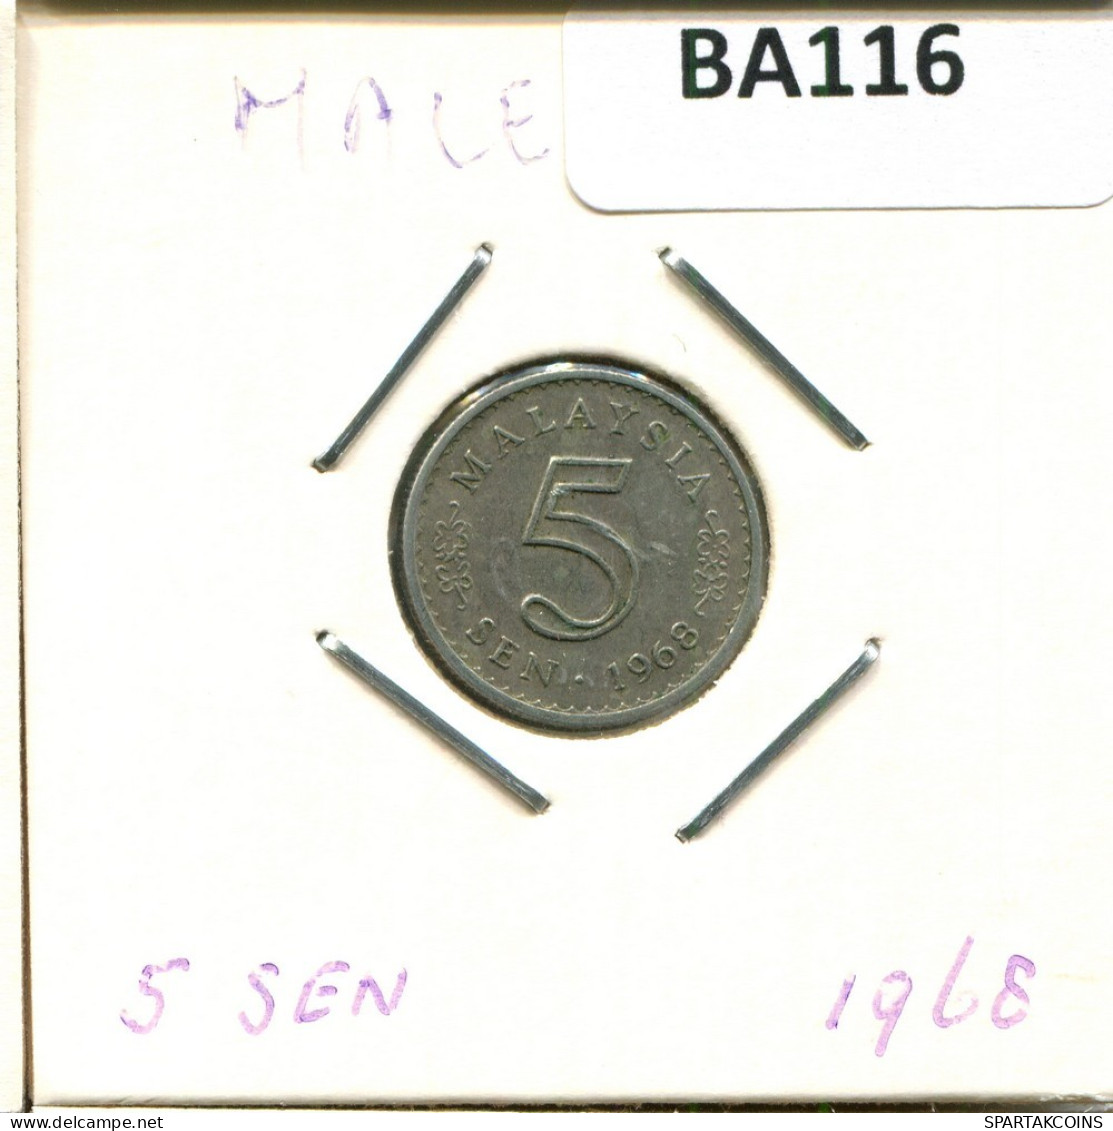 5 SEN 1968 MALAYSIA Coin #BA116.U.A - Malesia